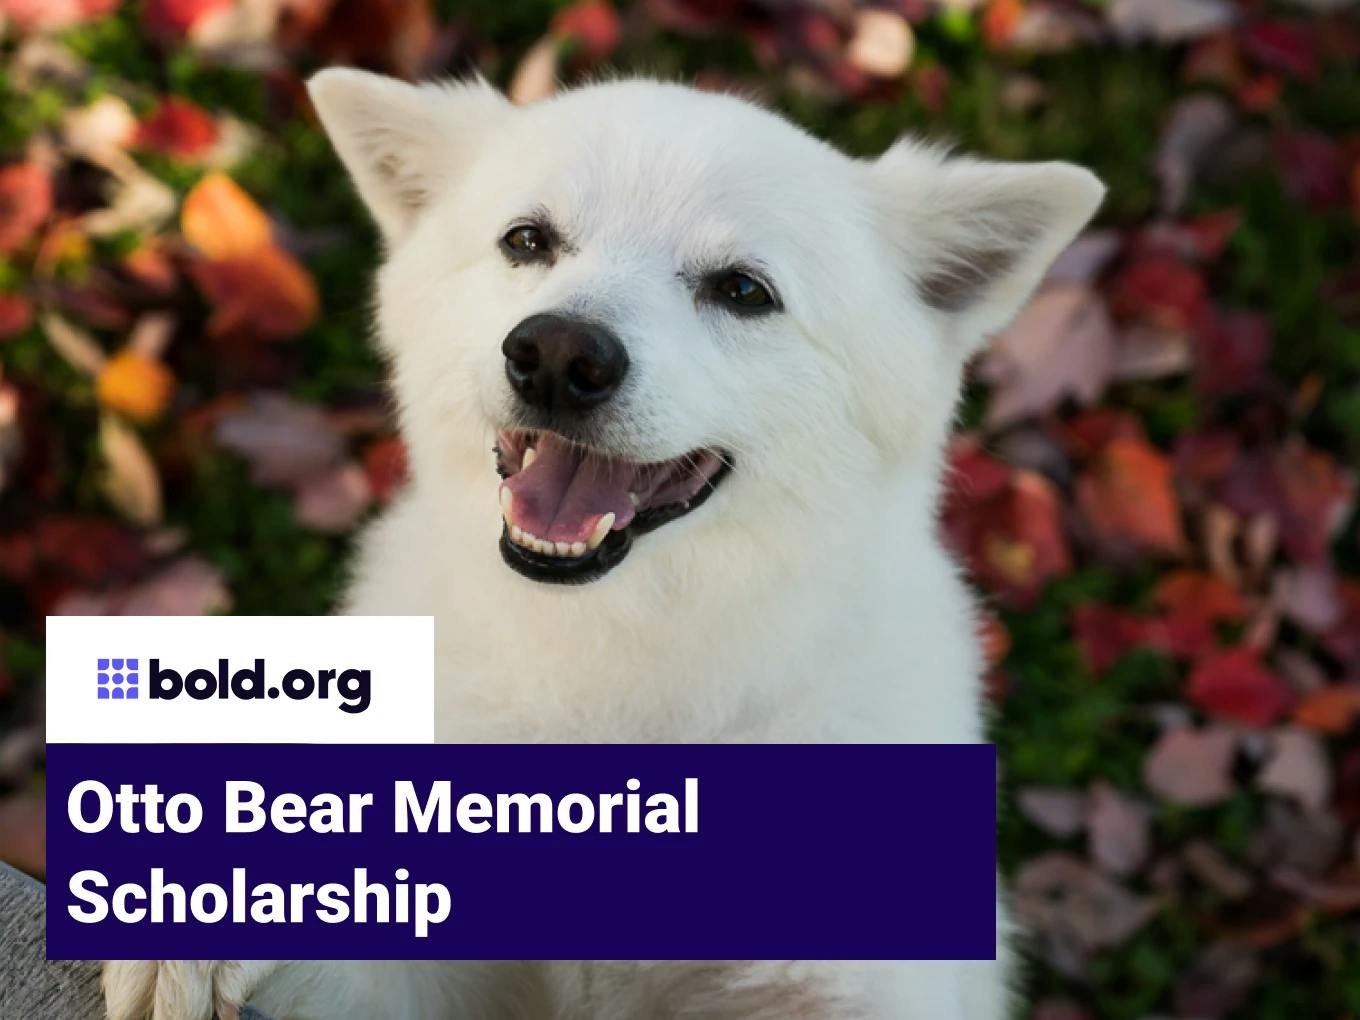 Otto Bear Memorial Scholarship